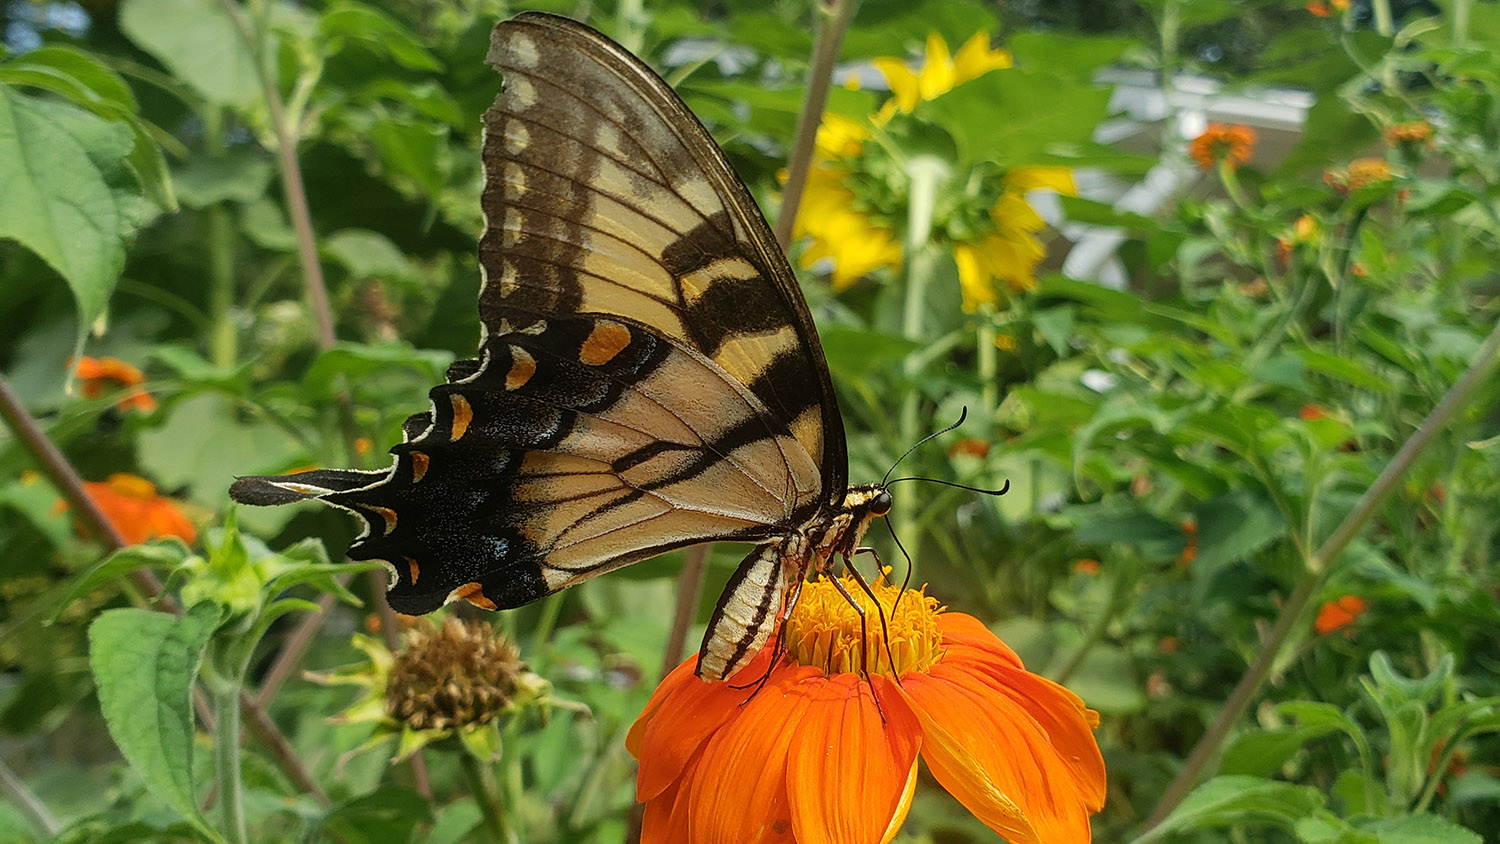 Swallowtail butterfly on flower